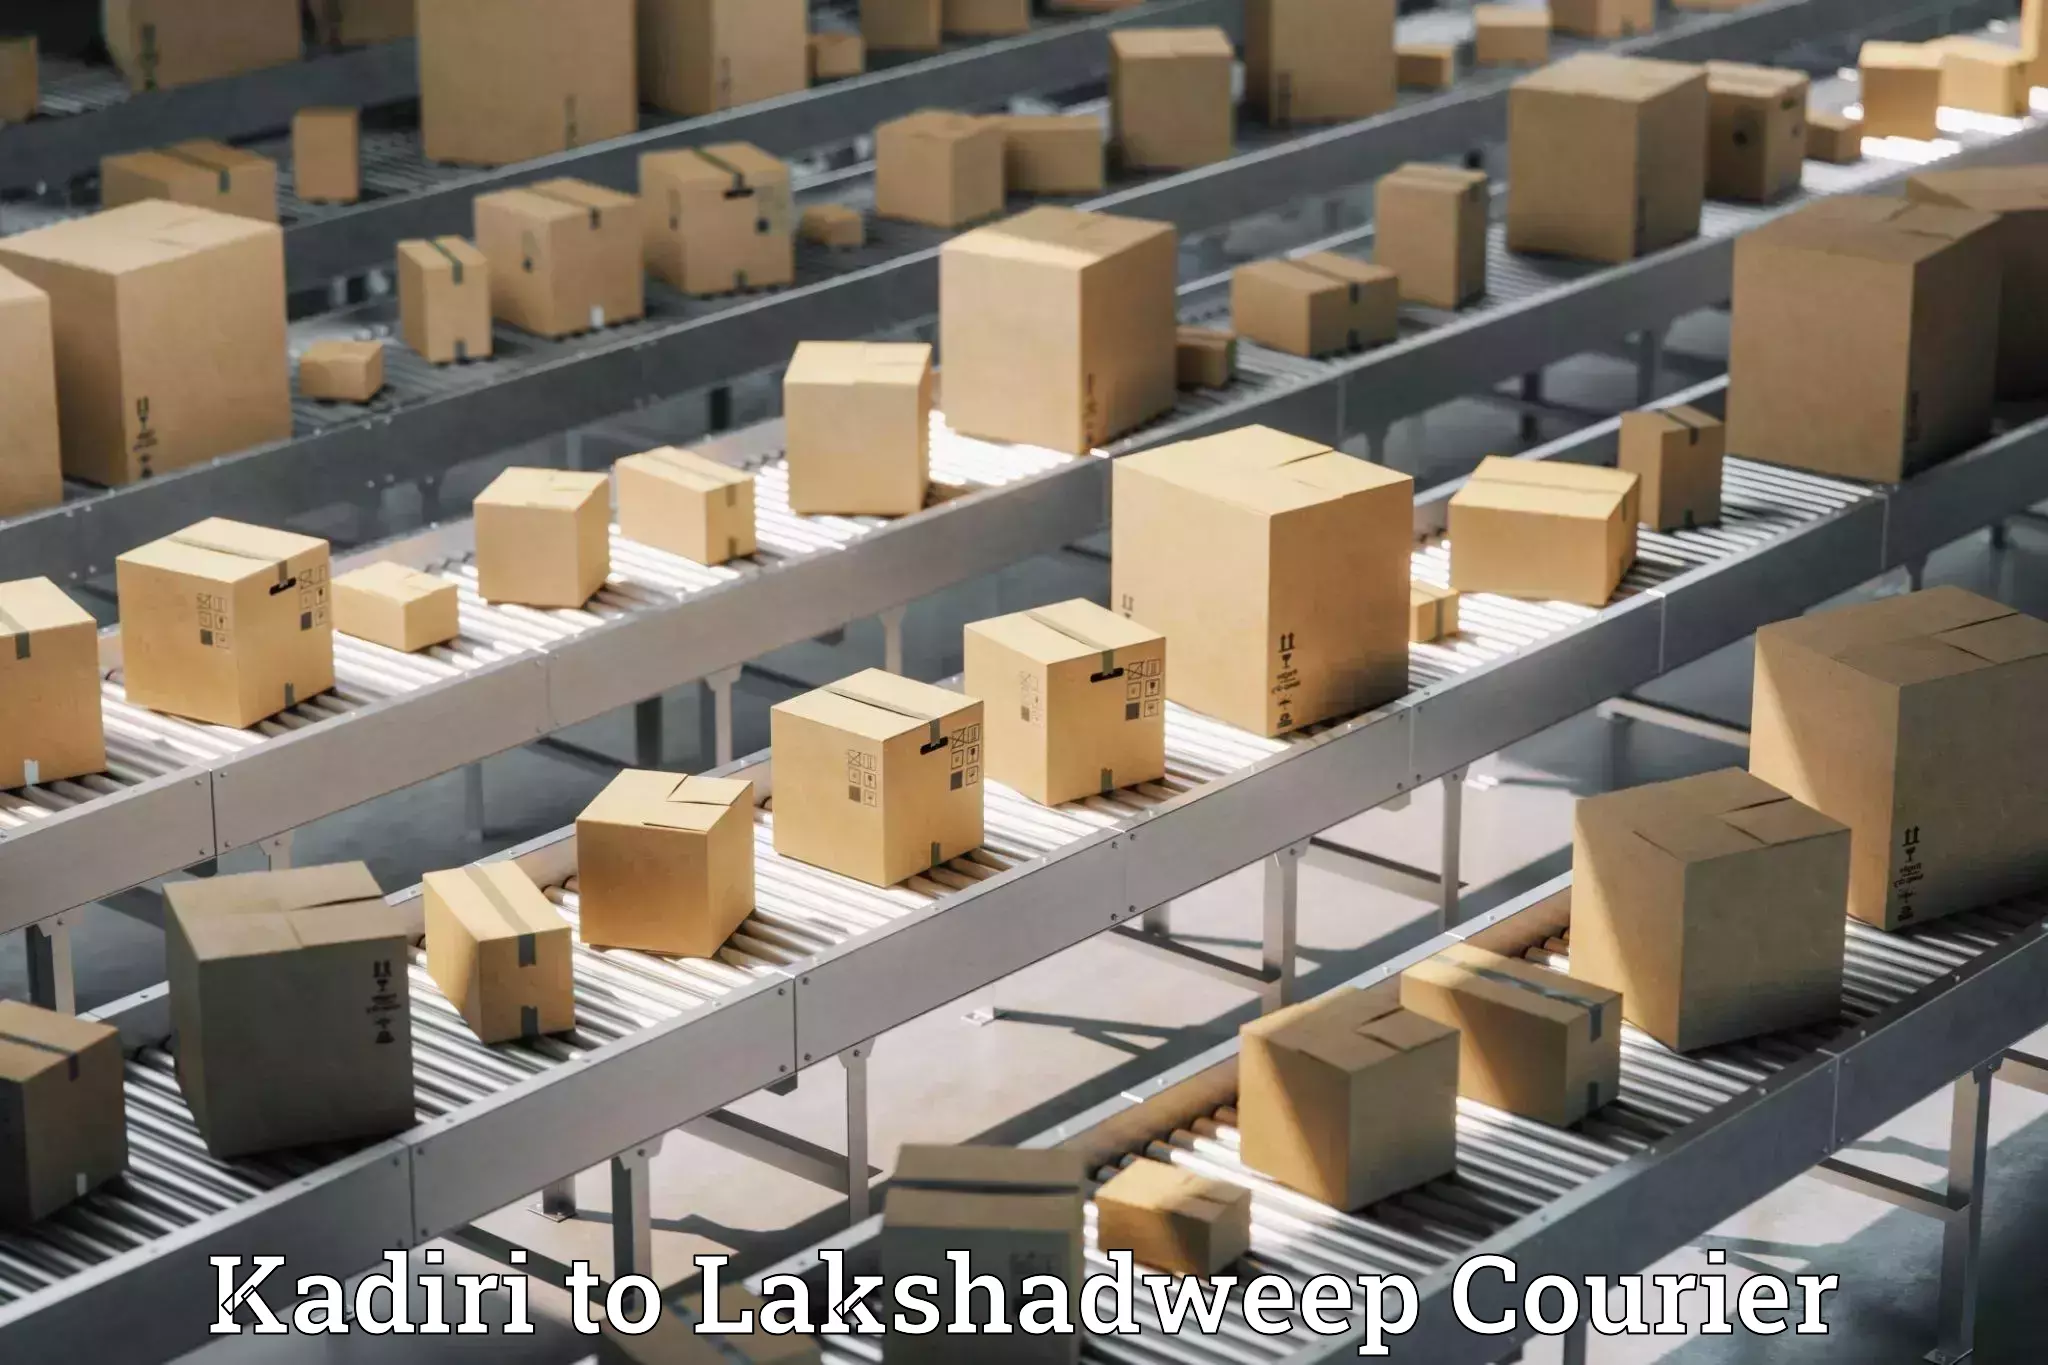 Lightweight parcel options Kadiri to Lakshadweep